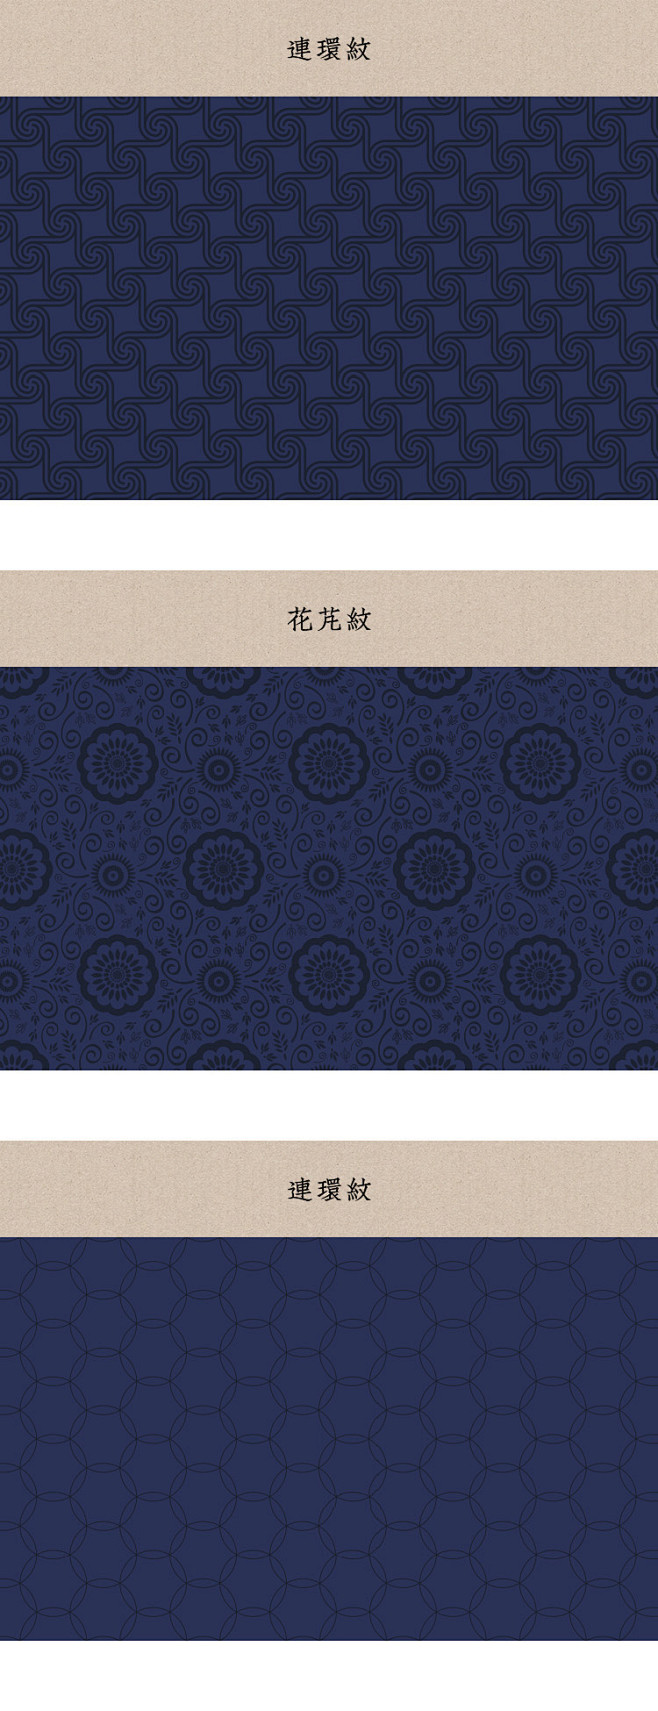 s2821中国风古典底纹古代传统纹样日式...